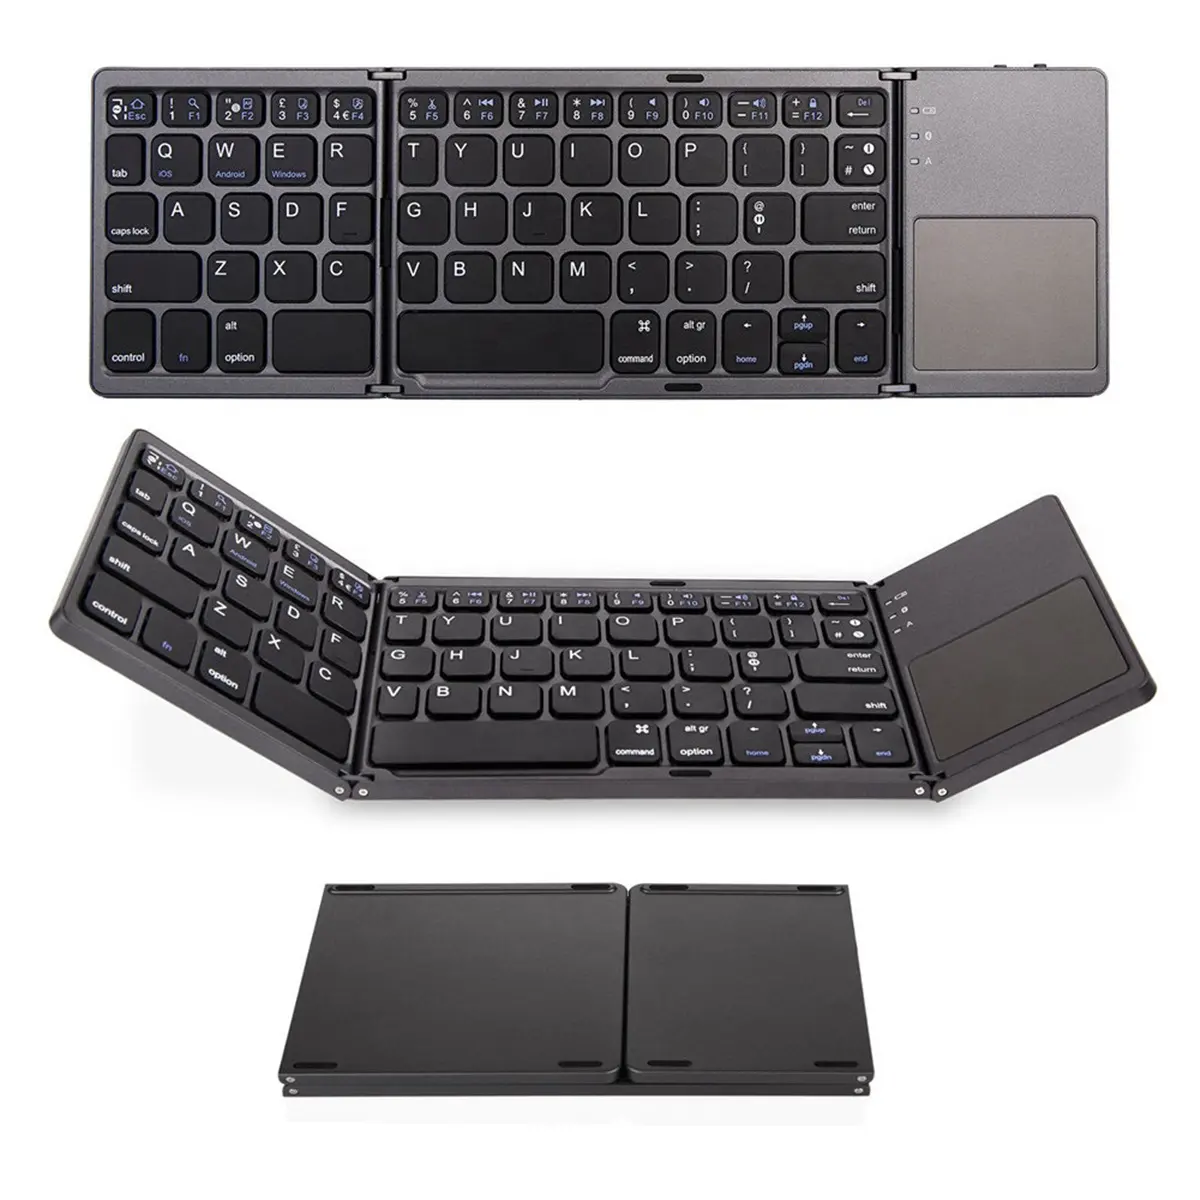 Taşınabilir Mini 2.4G BT kablosuz klavye ve fare Combo için Ipad Android Tablet şarj edilebilir tuş takımı Touchpad ile B033